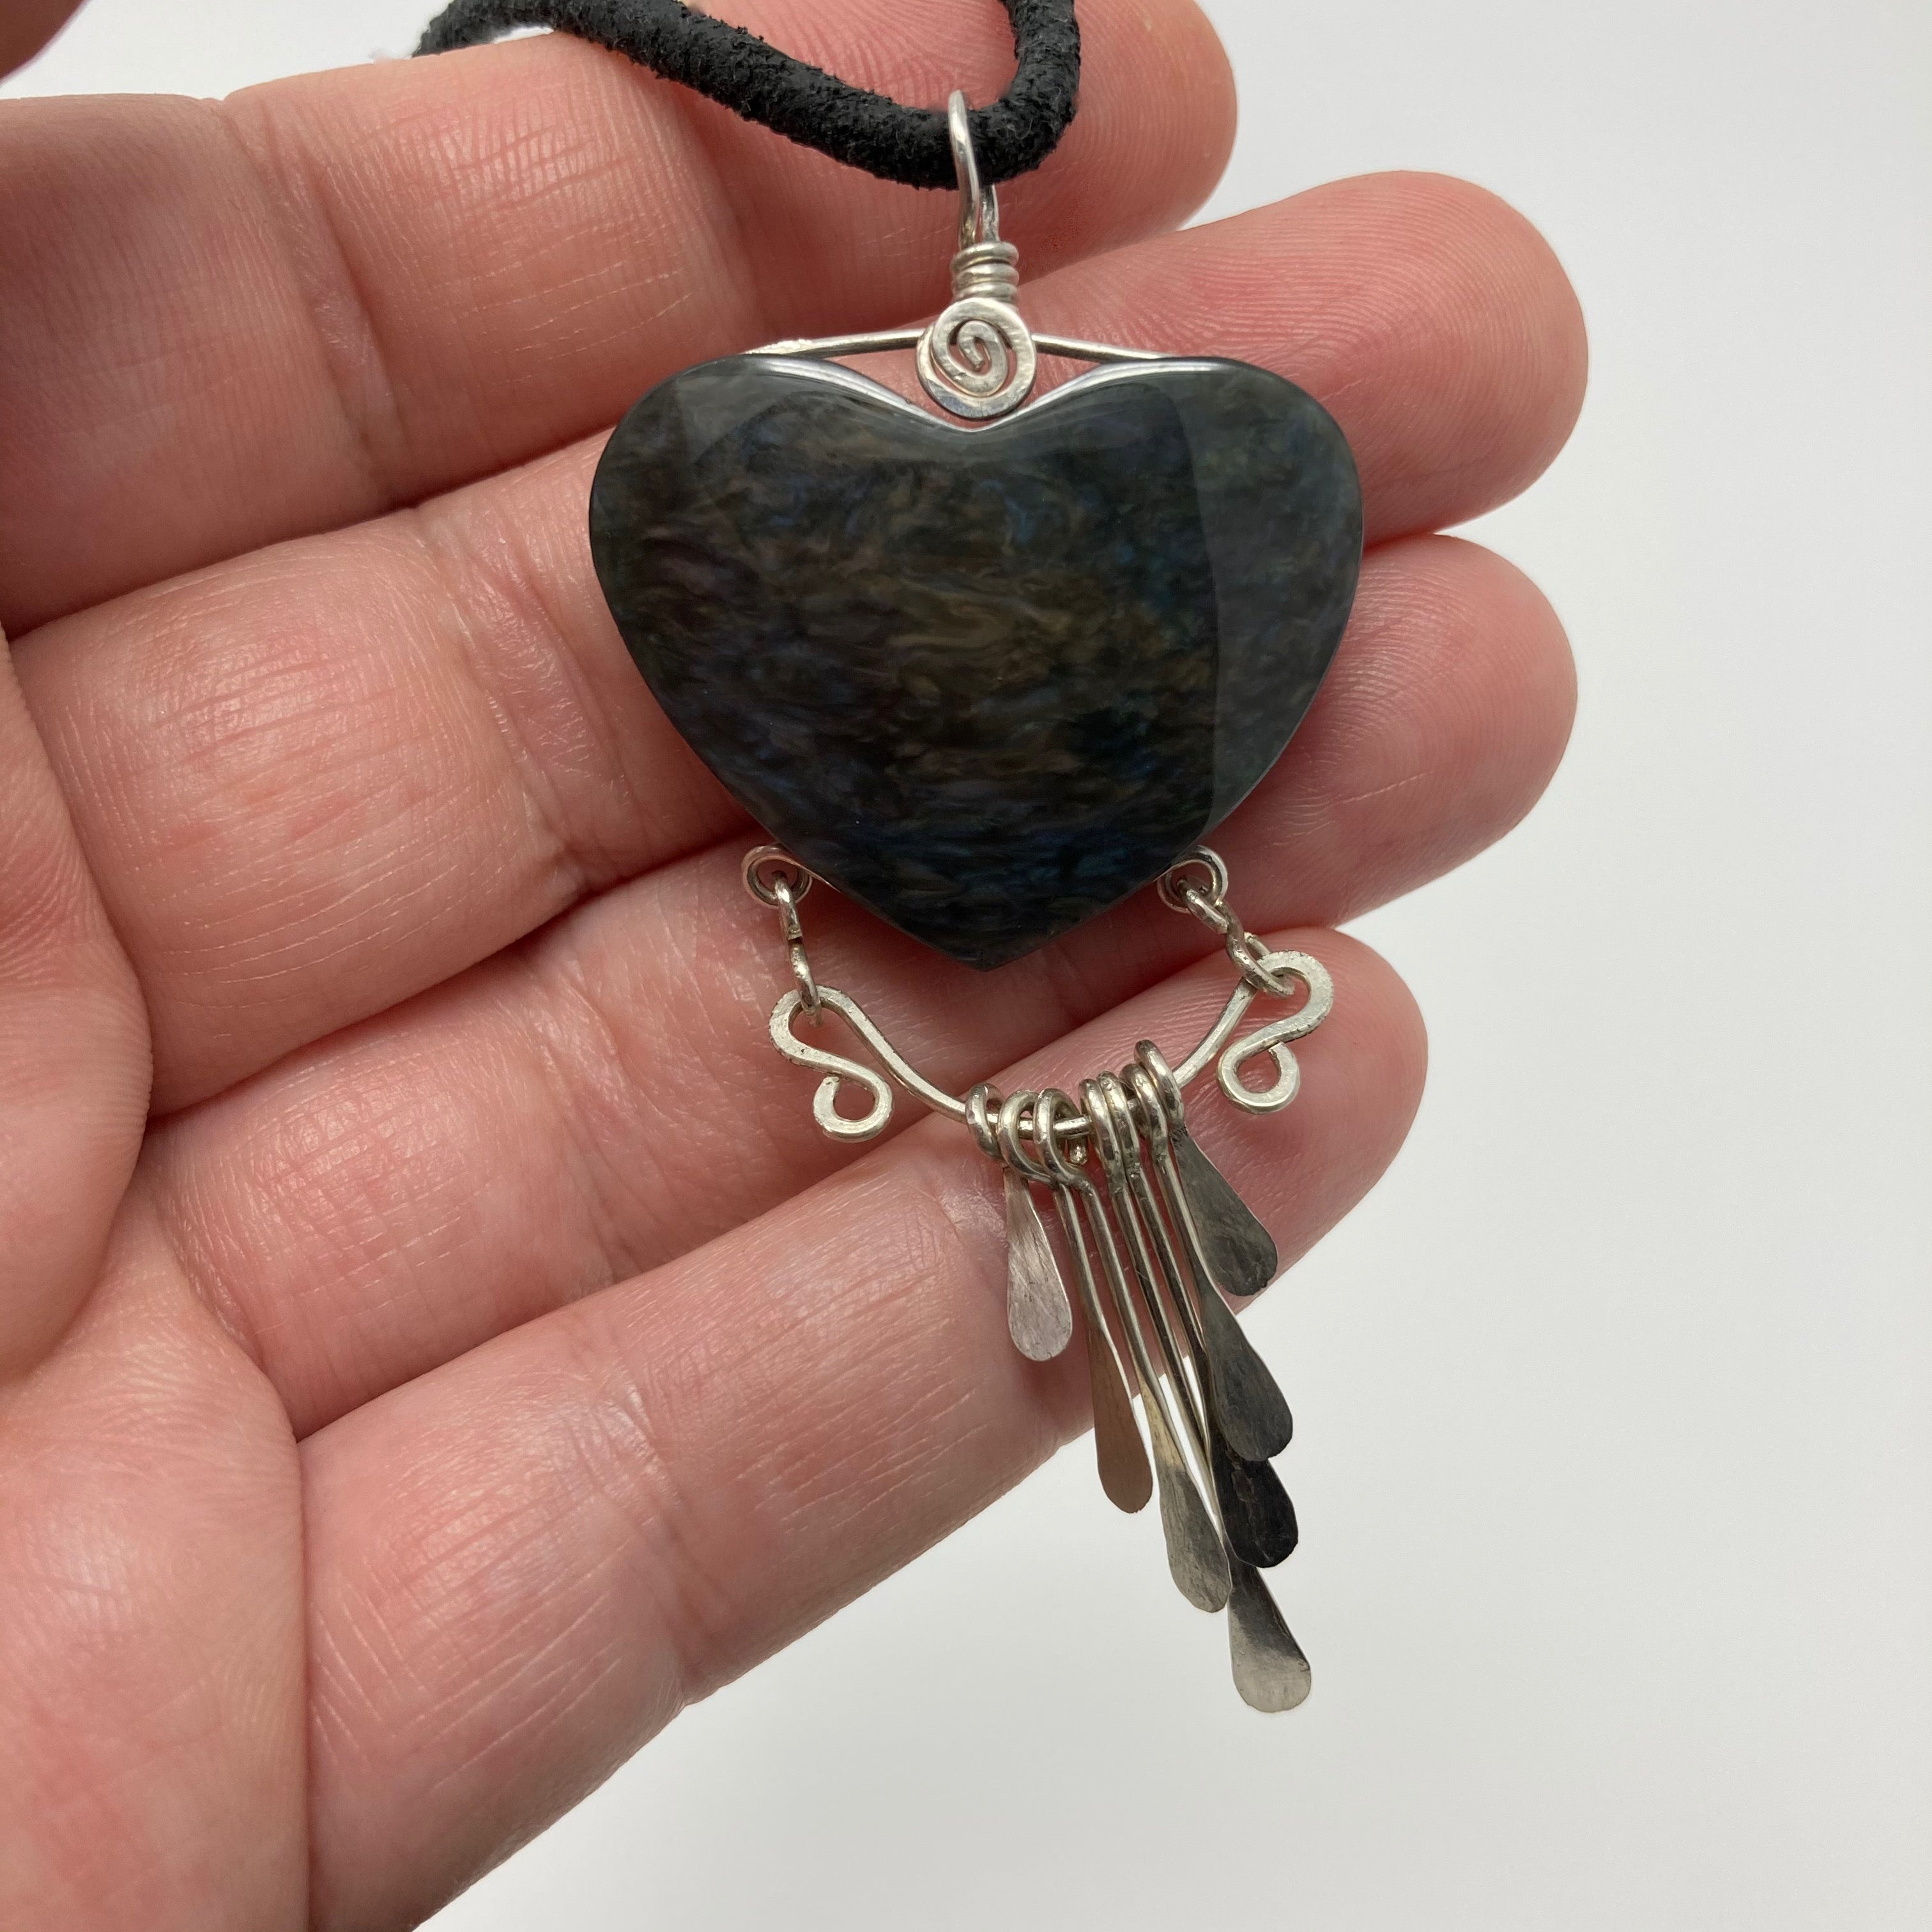 Manto Huichol Obsidian Heart